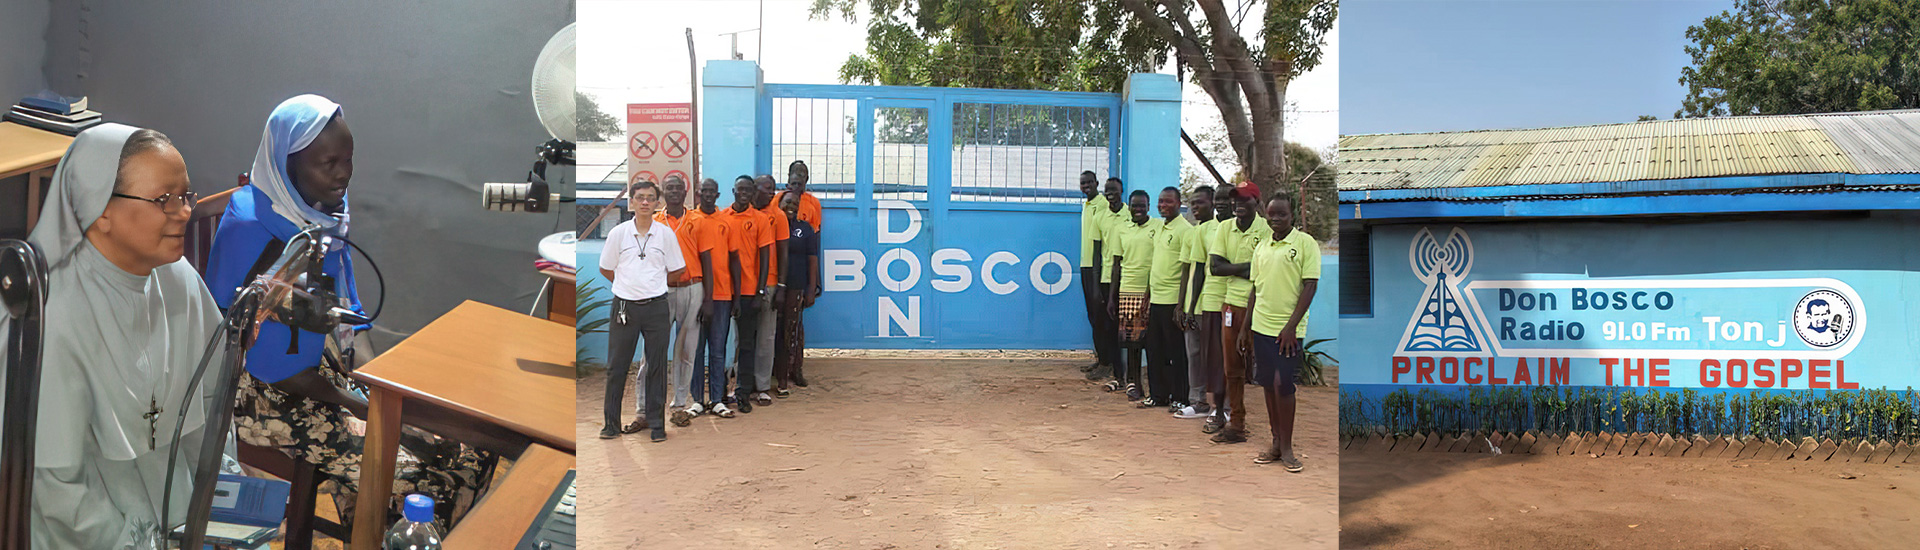 Don Bosco Radio 91.0 FM, la emisora salesiana que evangeliza y educa en Tonj (Sudán del Sur)